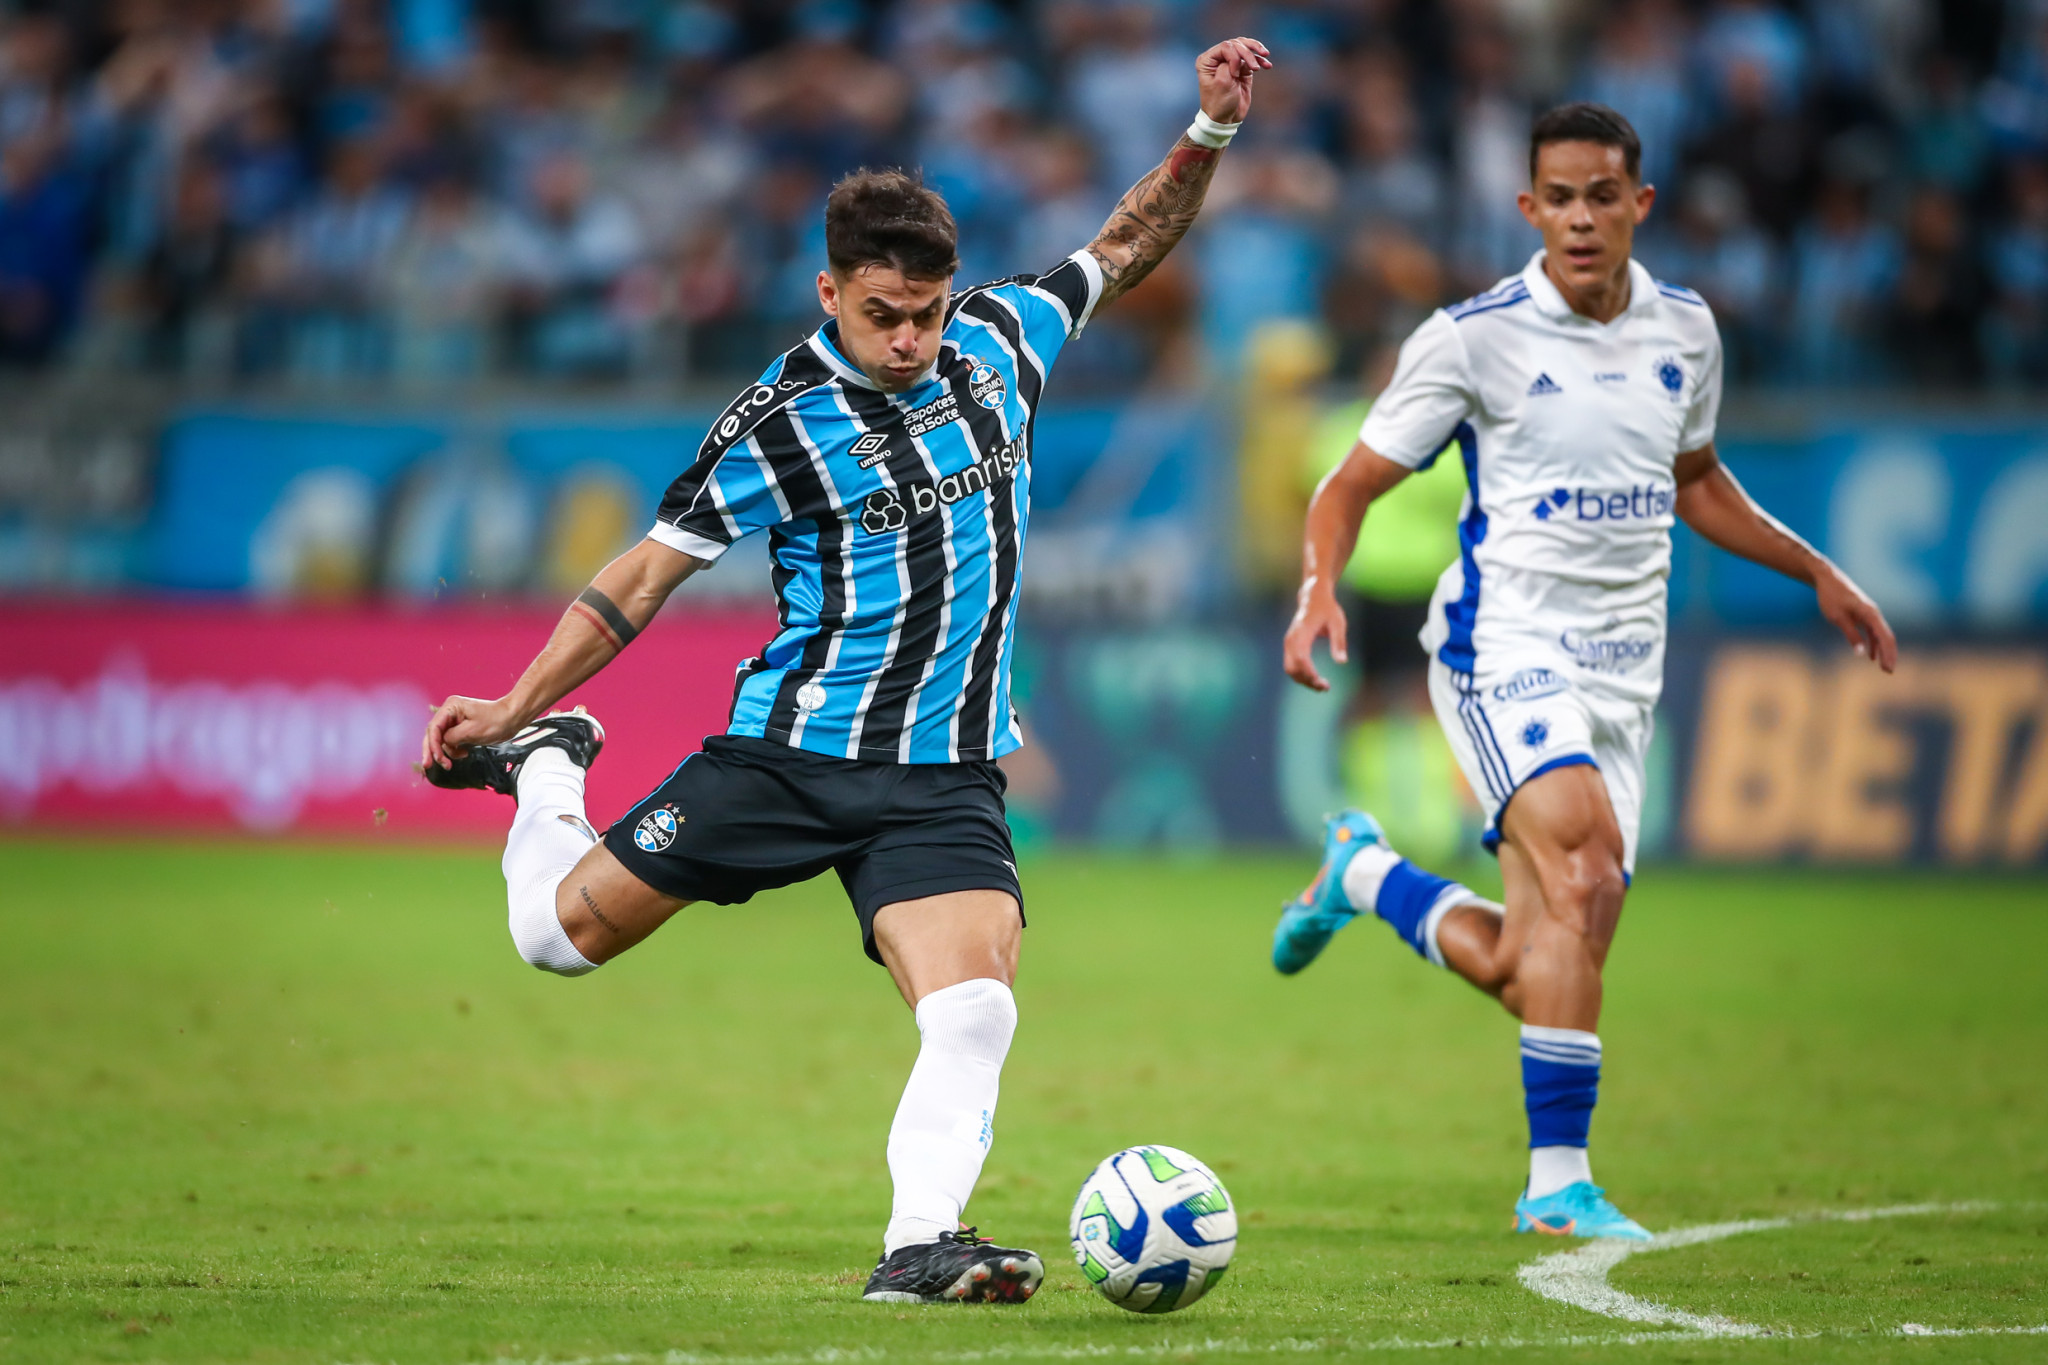 Copa do Brasil: Grêmio e Cruzeiro empatam em jogo de golaços - Superesportes